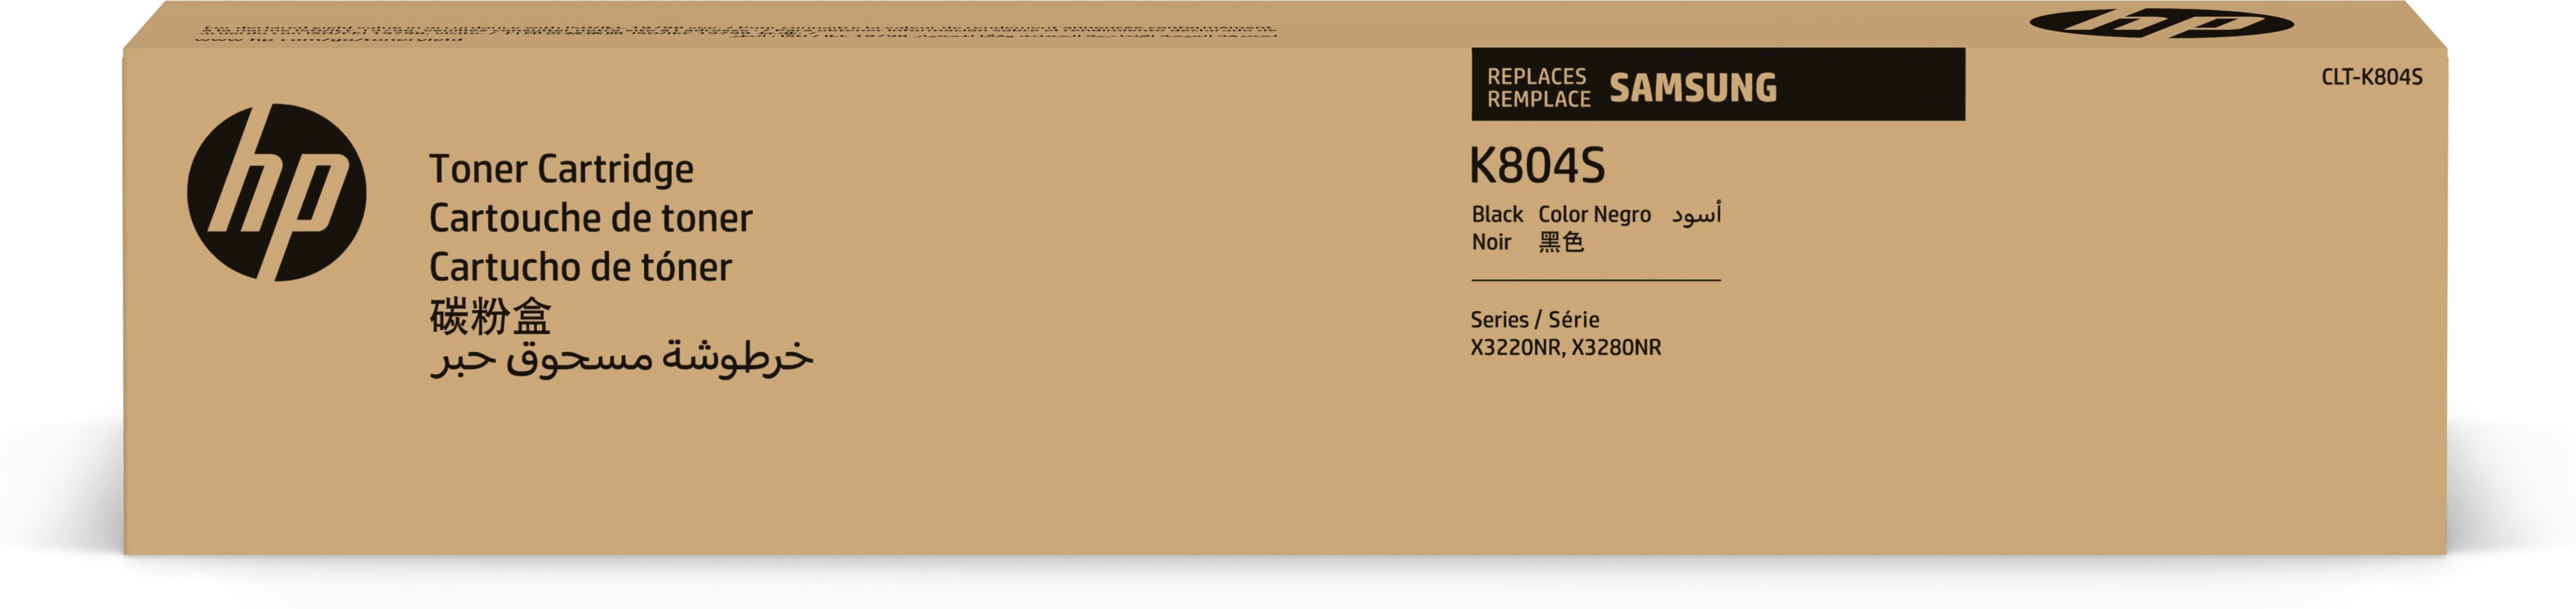 Samsung Tóner CLT-K804S / SS586A Negro